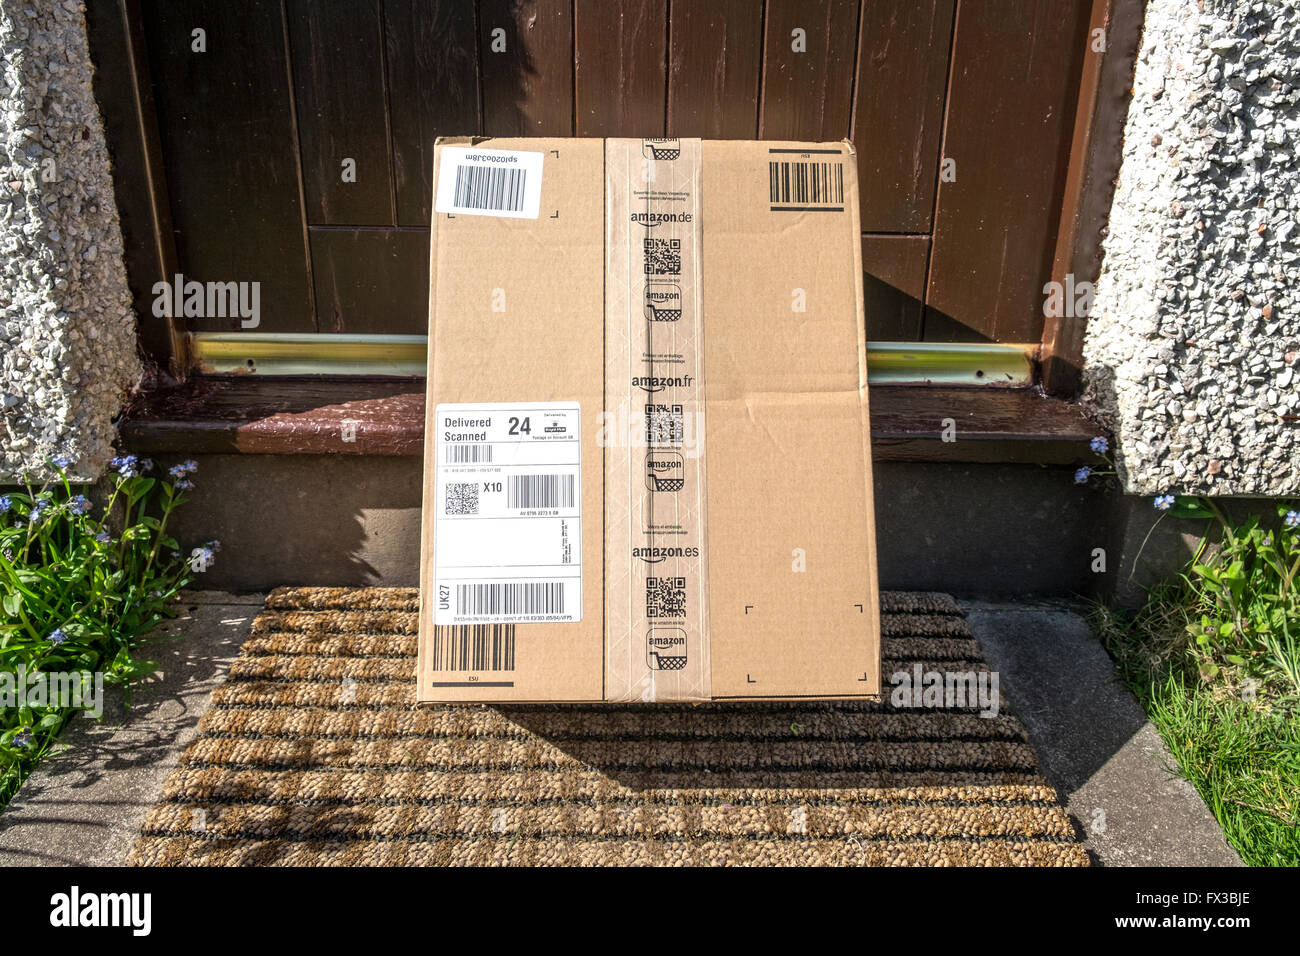 Livraison Amazon laissés à l'extérieur de maison sur la porte Banque D'Images